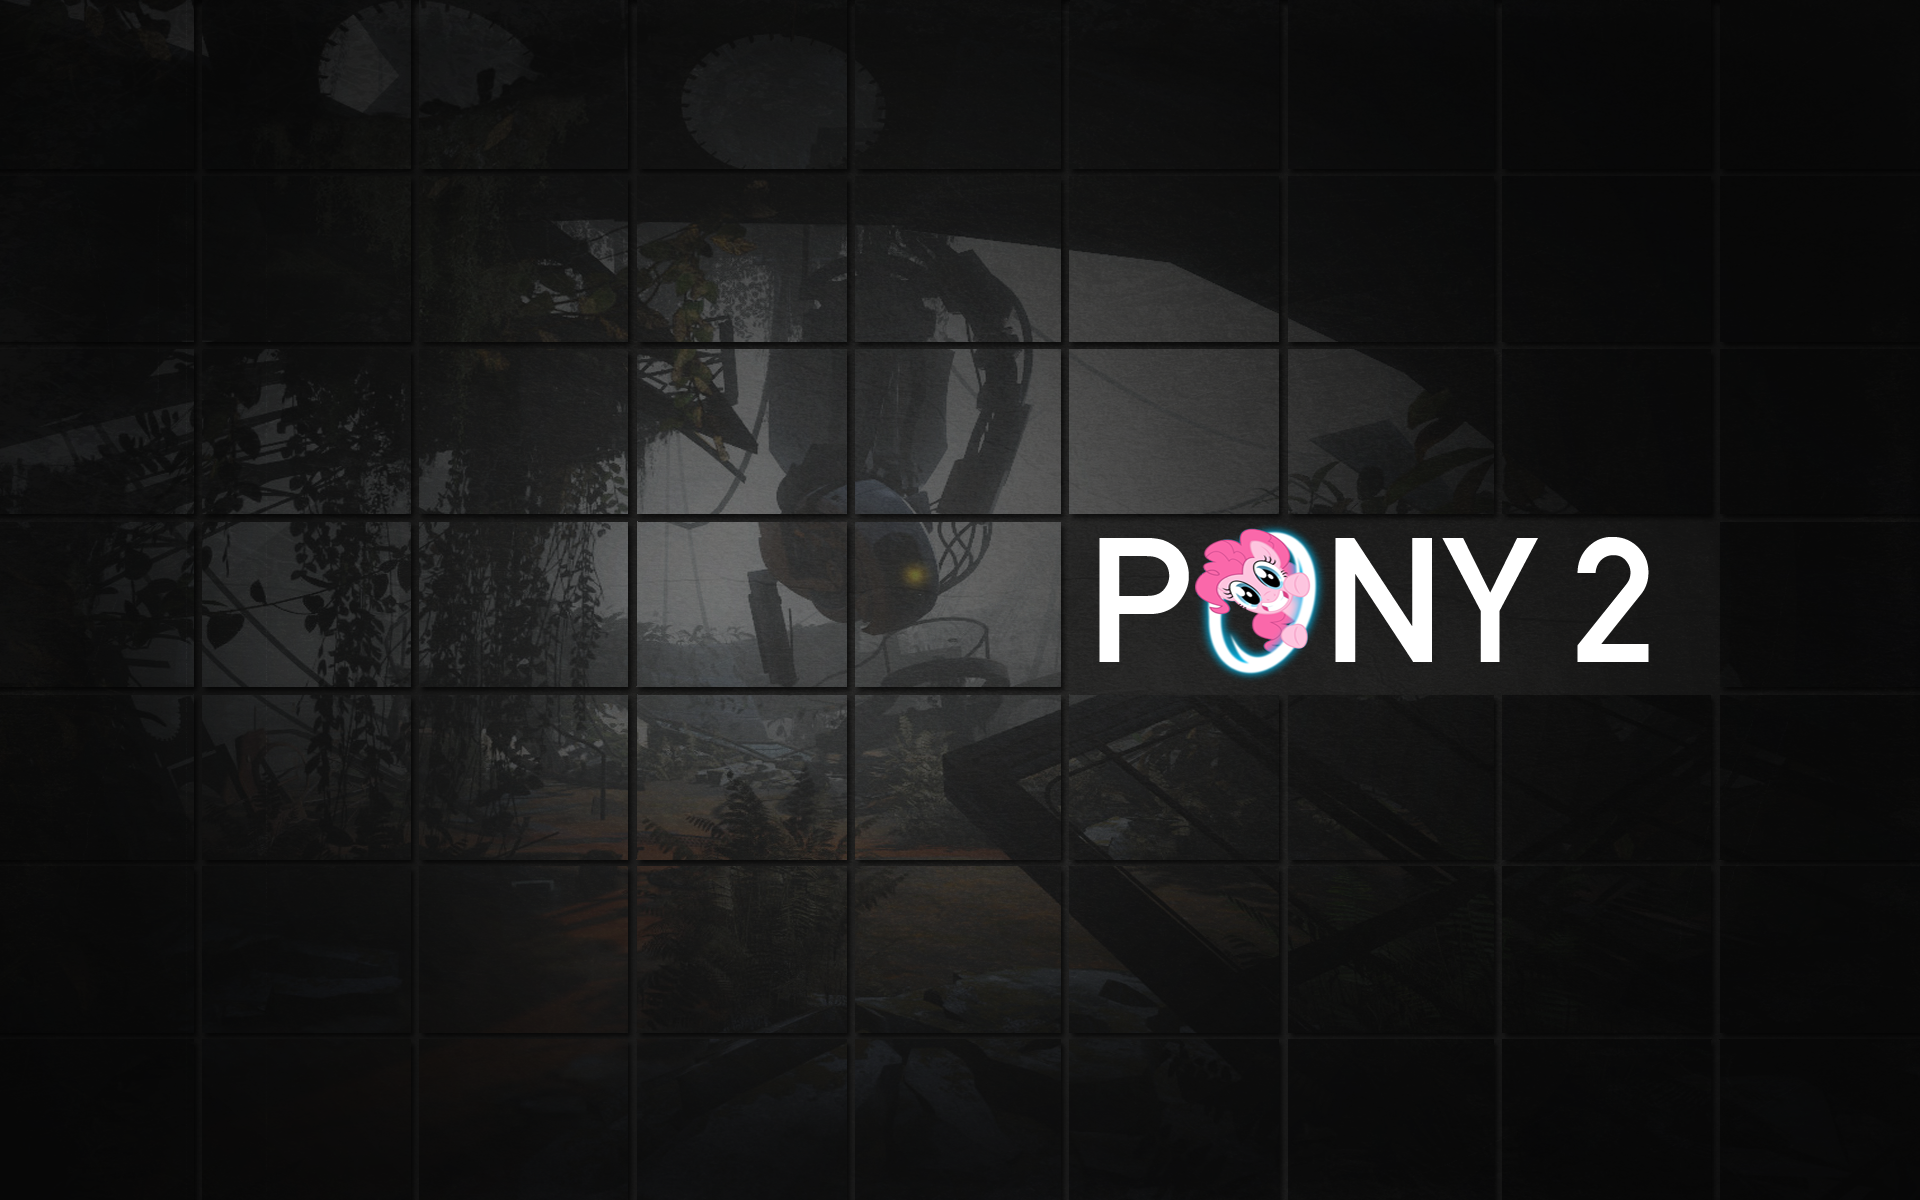 Pony 2 Wallpaper (Portal 2 Parody) by SlurpyNom